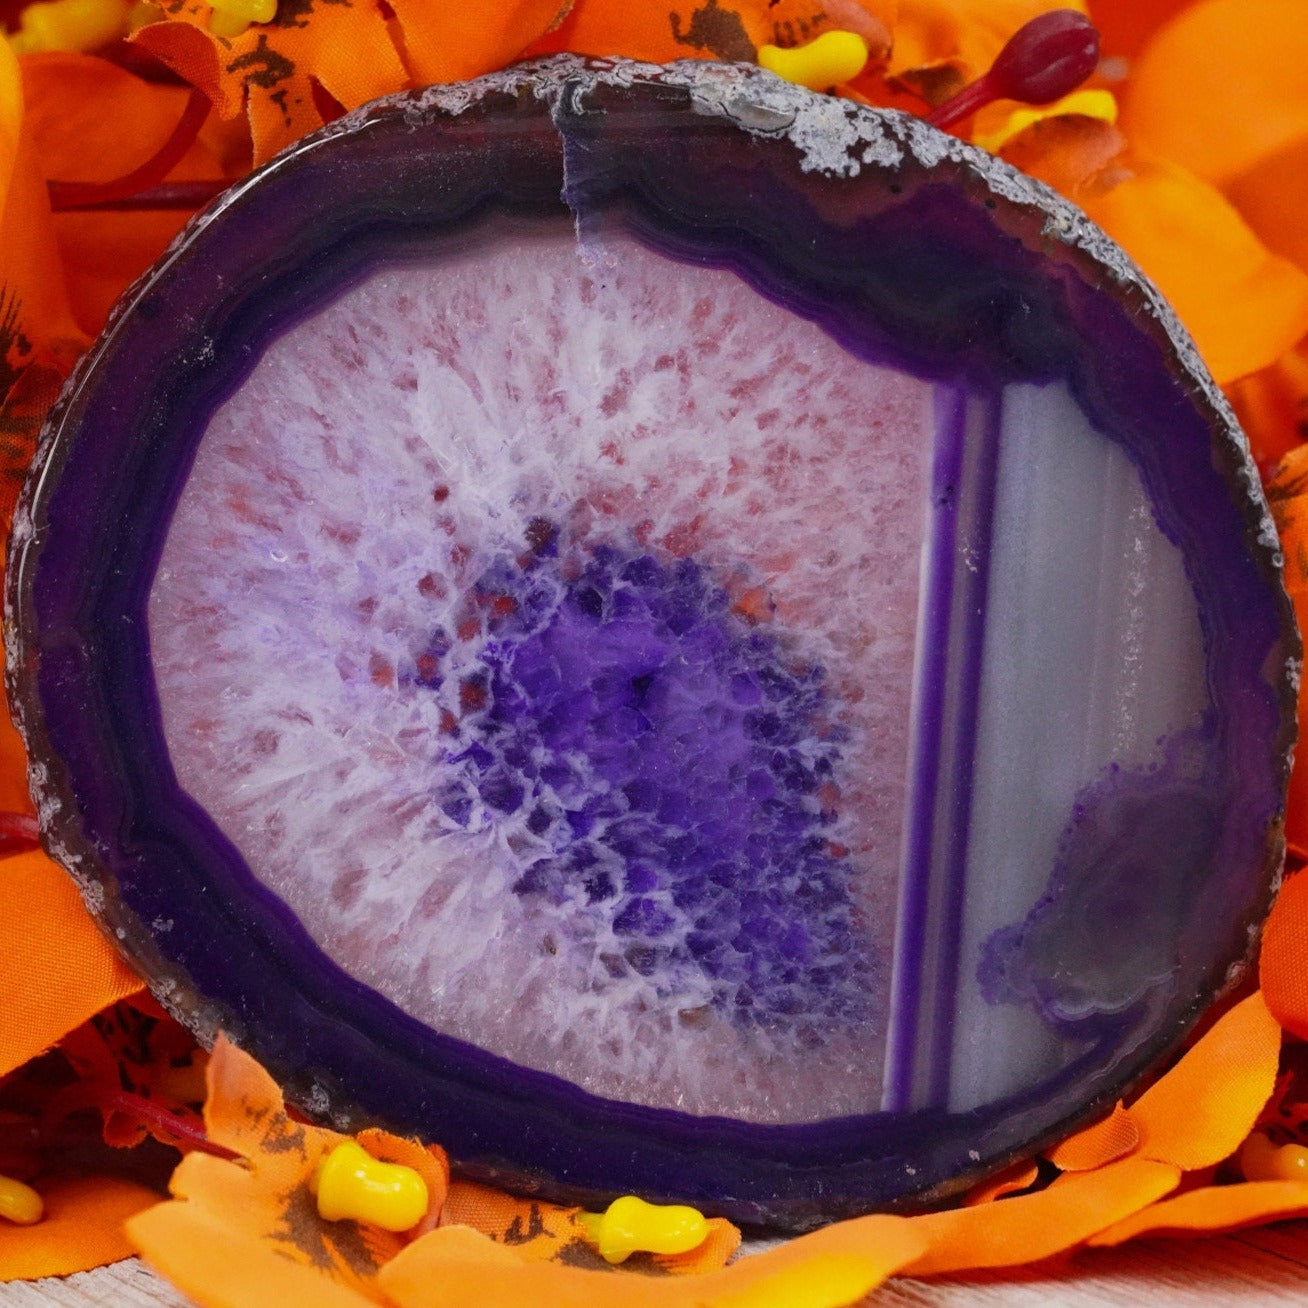 Purple Agate Slices